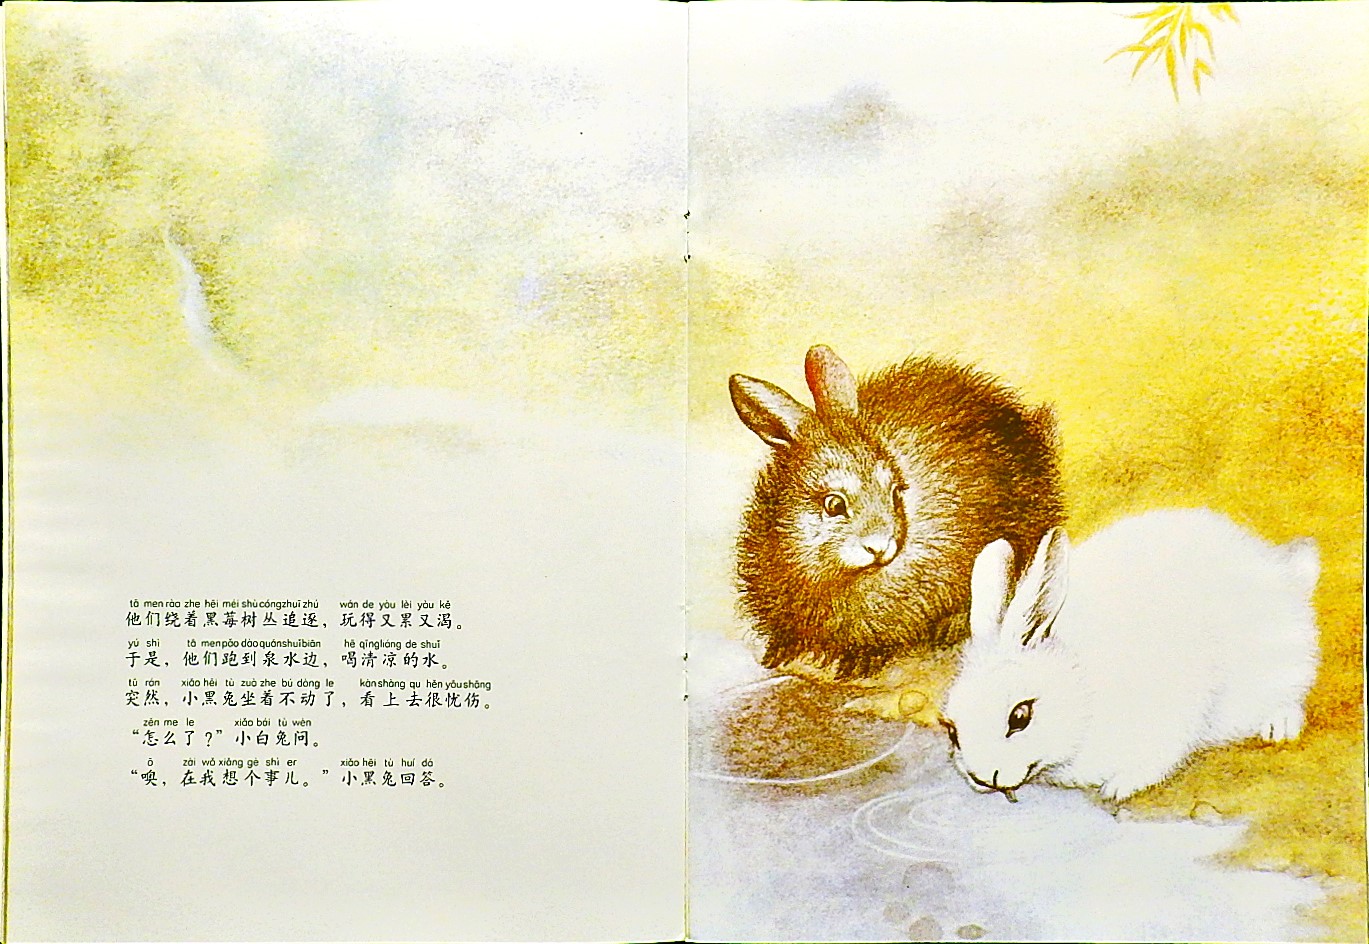 黑兔和白兔 (08),绘本,绘本故事,绘本阅读,故事书,童书,图画书,课外阅读